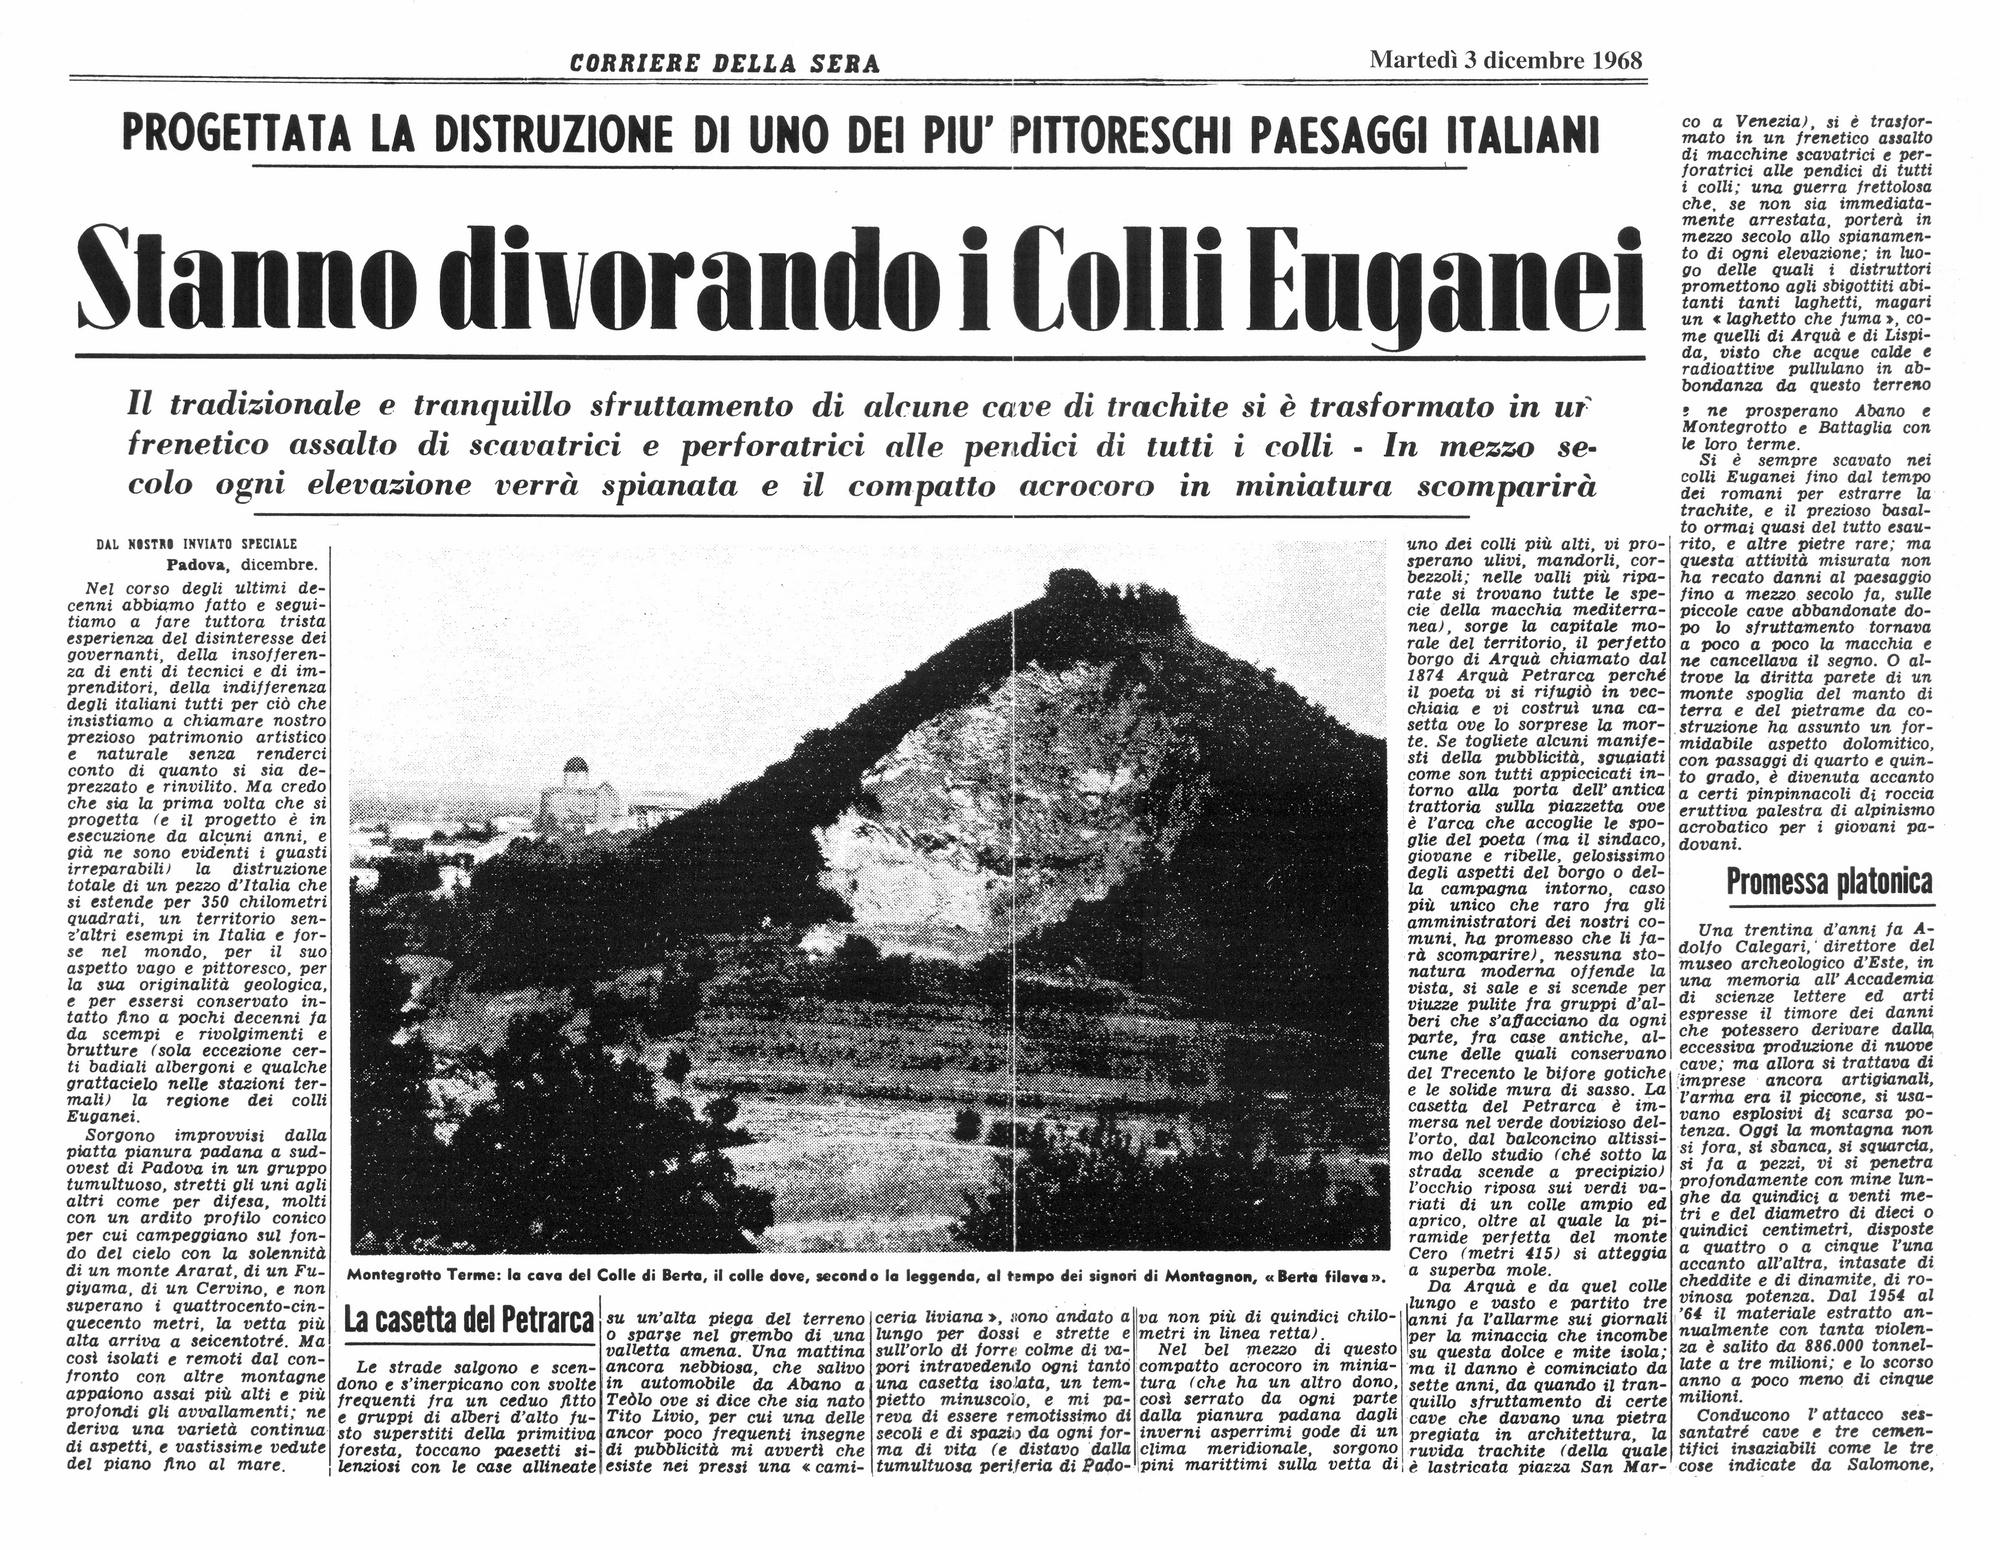 Stanno divorando i Colli Euganei. Articolo del 3 dicembre 1968, prima parte.